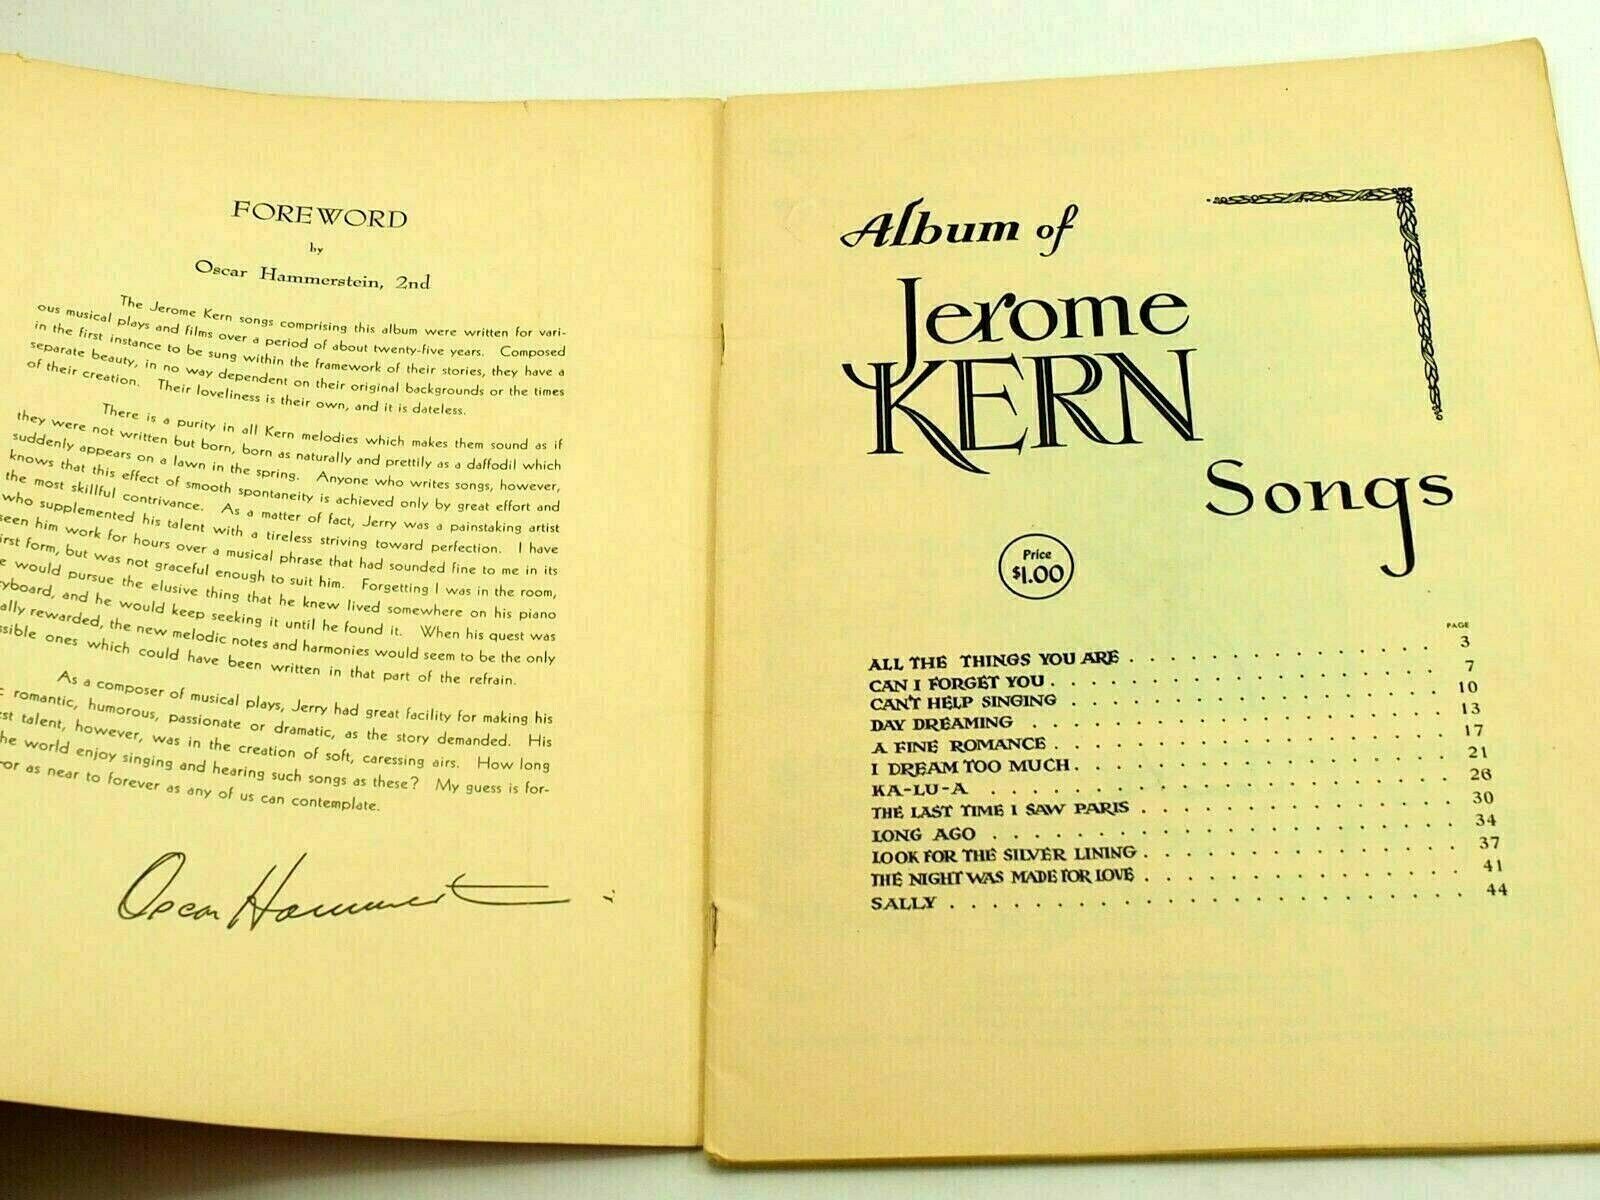 Album of jerome kern songs songs